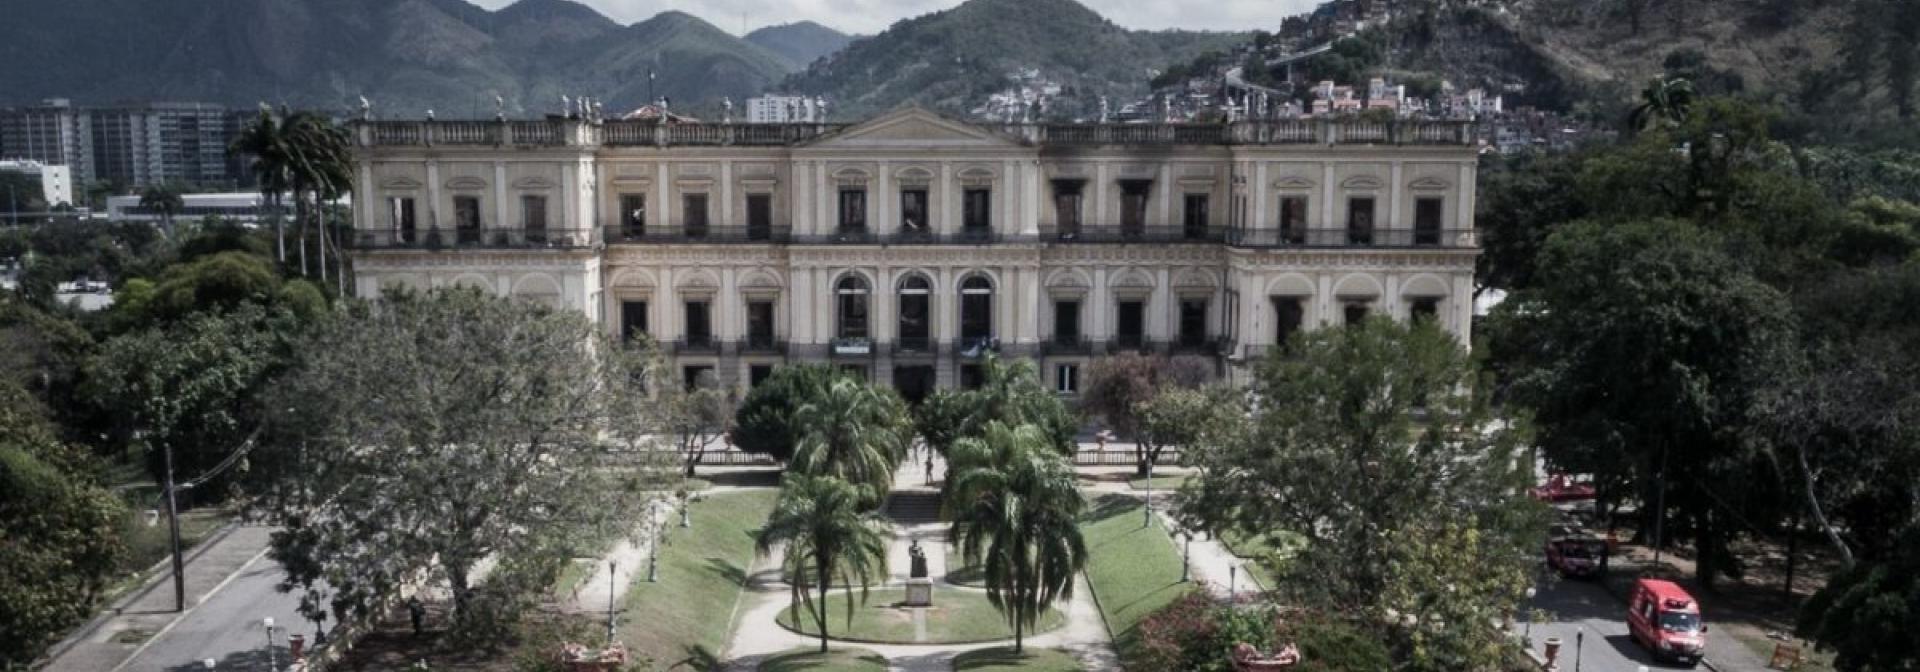 Museu Nacional Rio de Janeiro